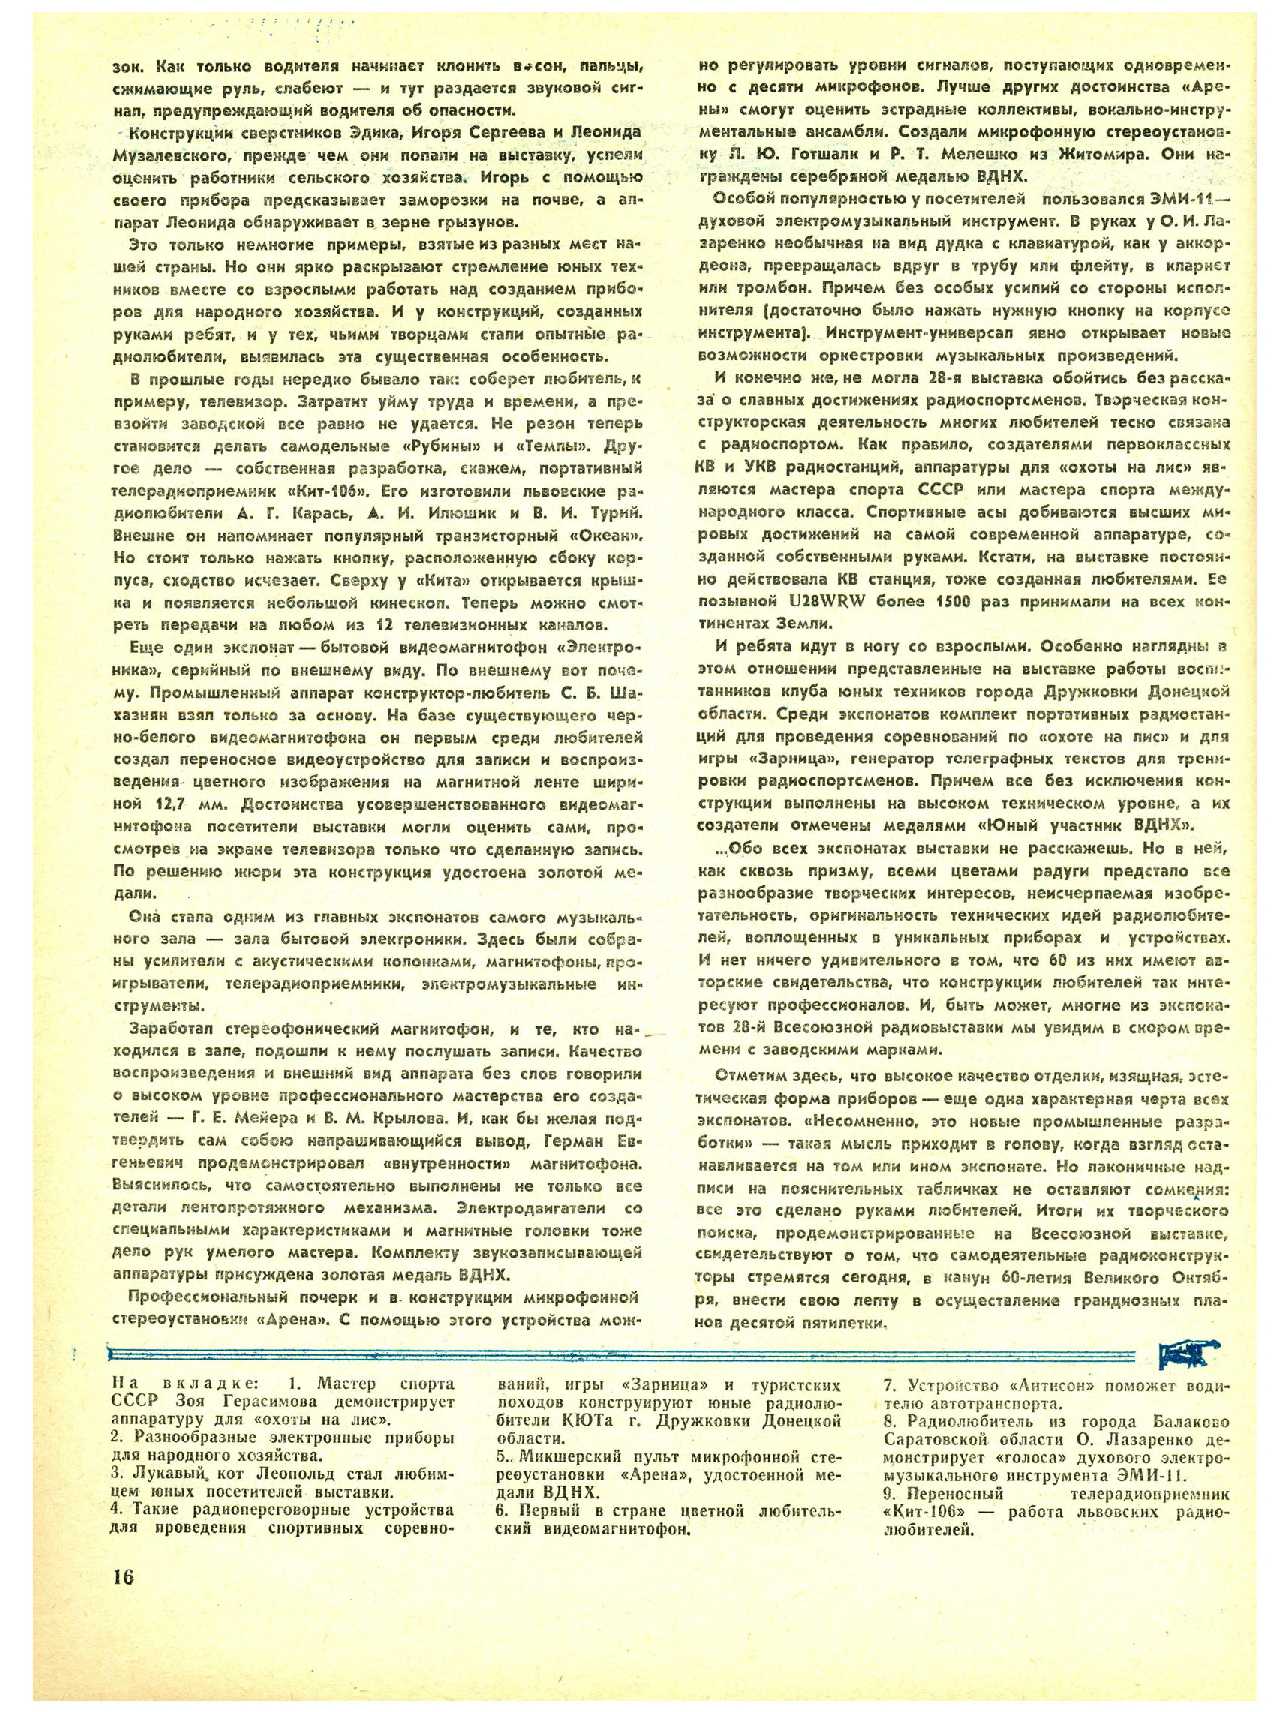 МК 9, 1977, 16 c.